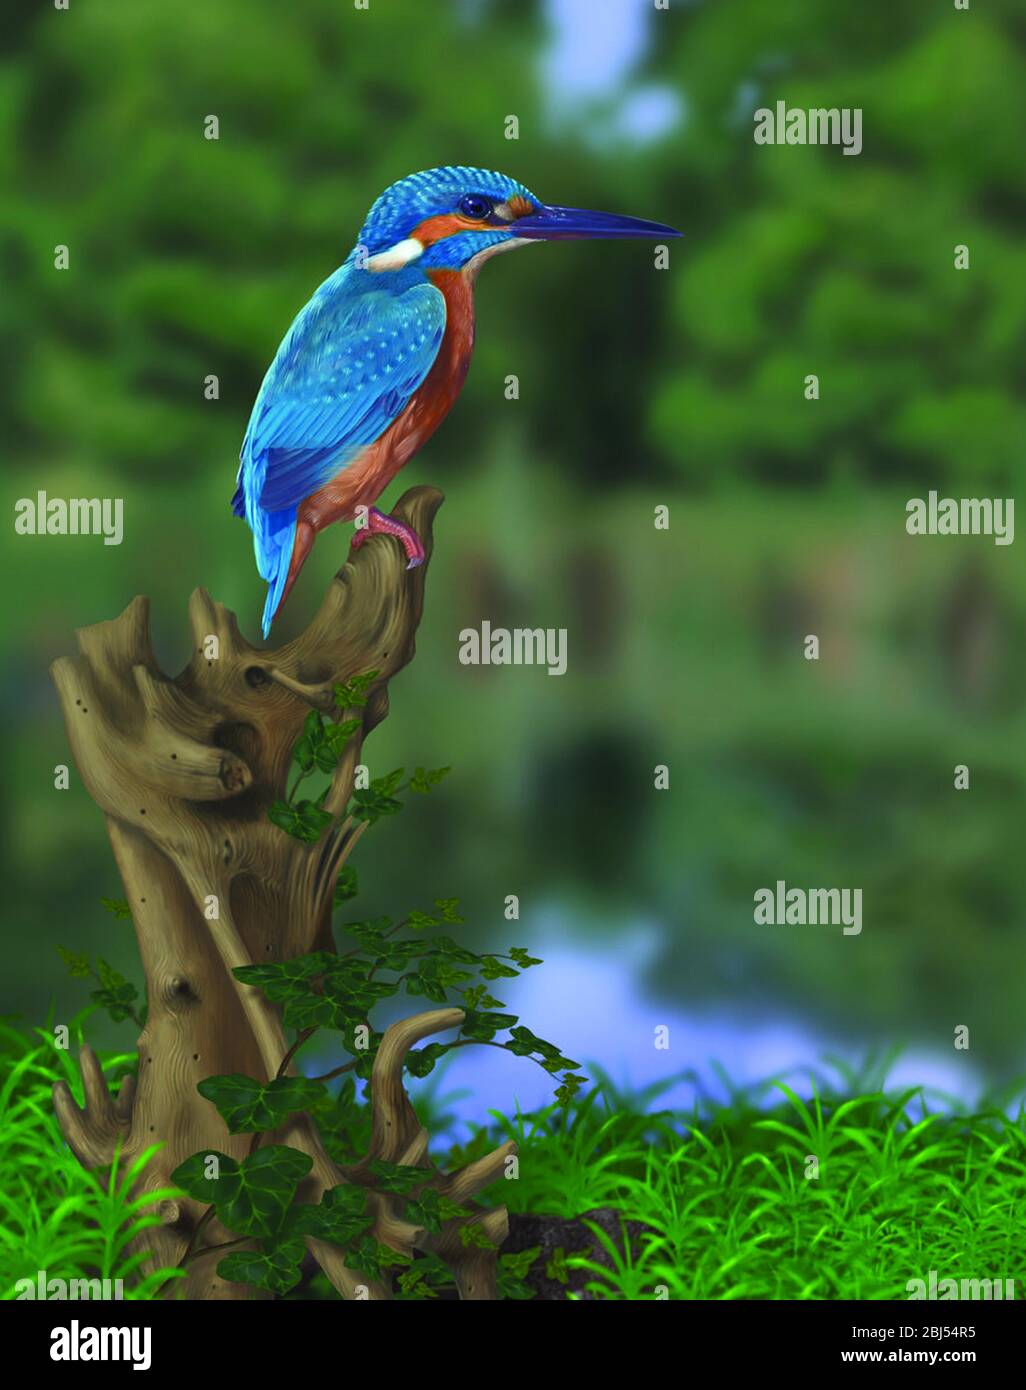 Kingfisher comune (pittura digitale). (Alcedo) conosciuto anche come Eurasian Kingfisher o River Kingfisher, è un piccolo re pescatore. Foto Stock